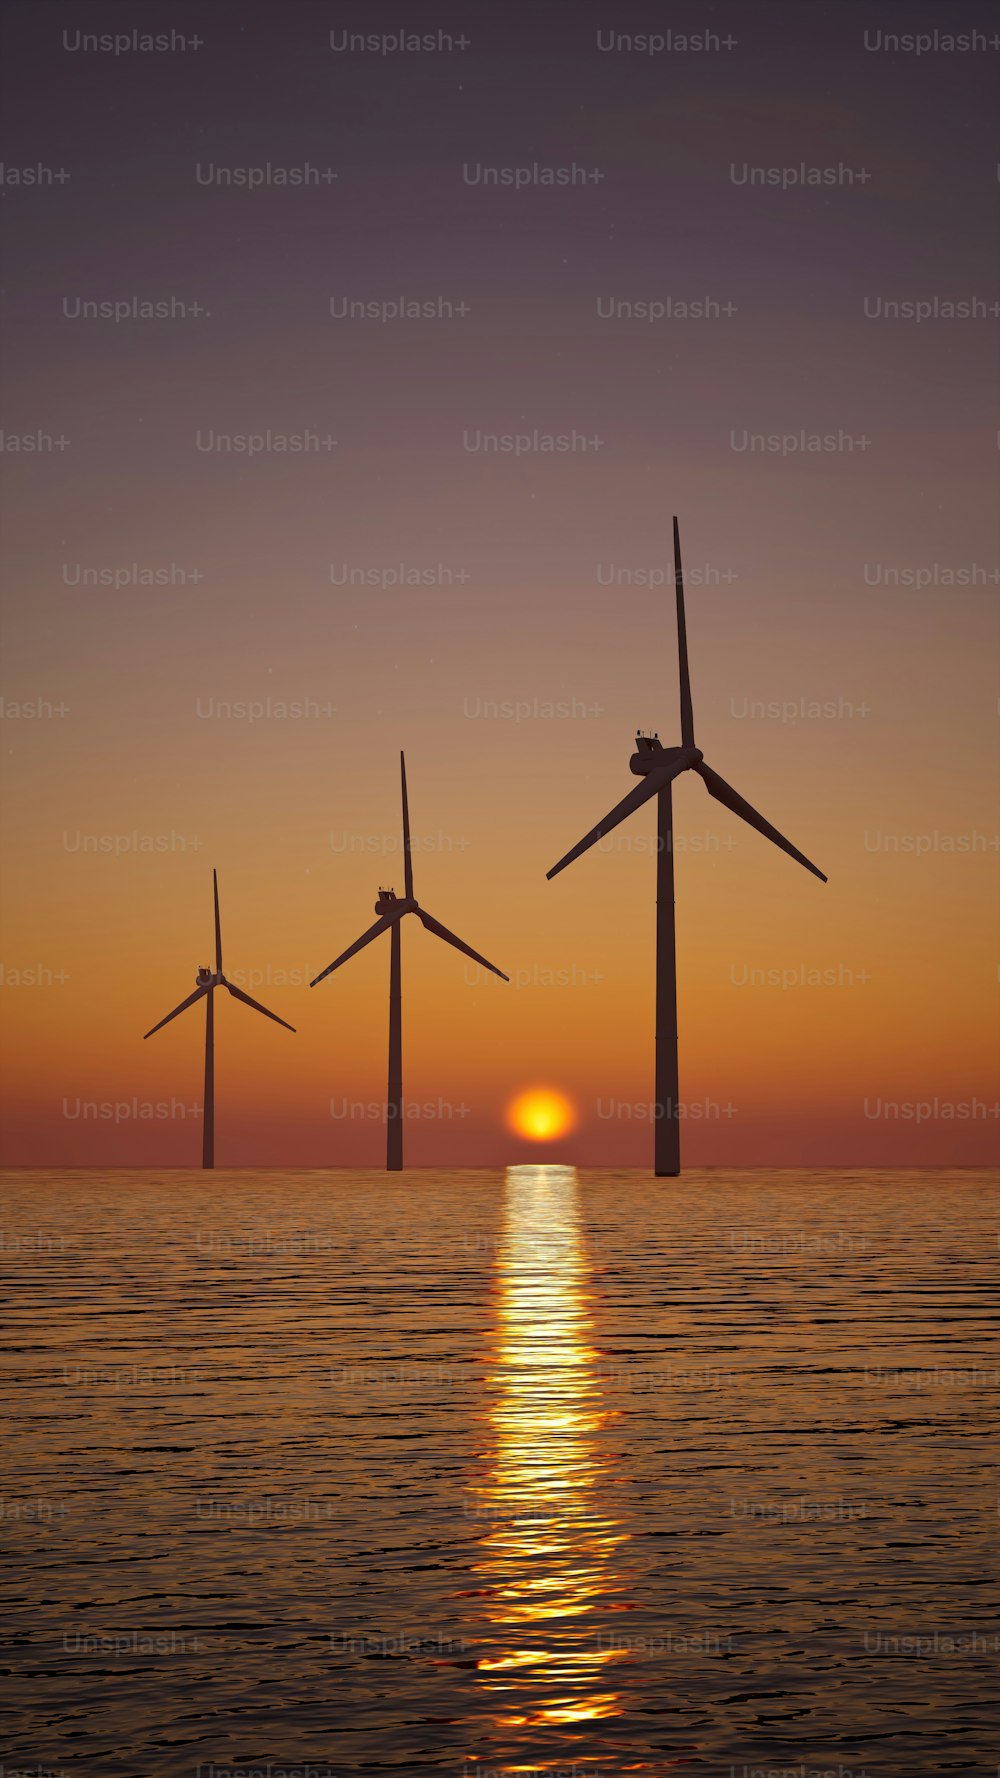 Eine Gruppe von Windmühlen, die bei Sonnenuntergang im Meer schwimmen